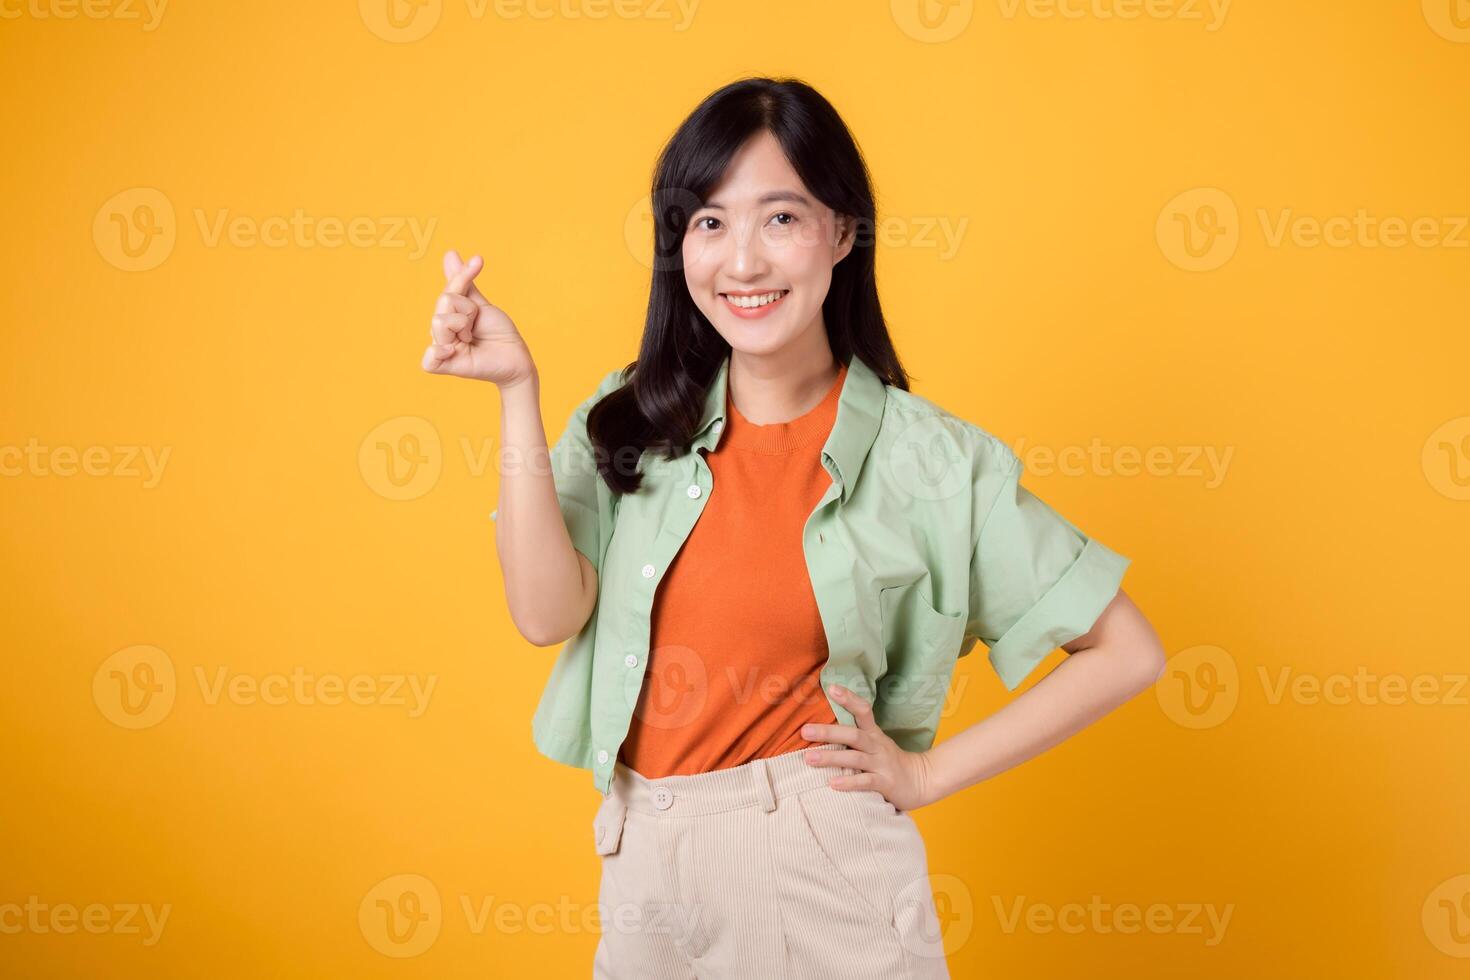 lycka med en ung asiatisk kvinna i henne 30-talet, klädd i ett orange skjorta och grön hoppare. henne mini hjärta gest, höft håll, och mild leende framföra en djupgående meddelande genom kropp språk. foto